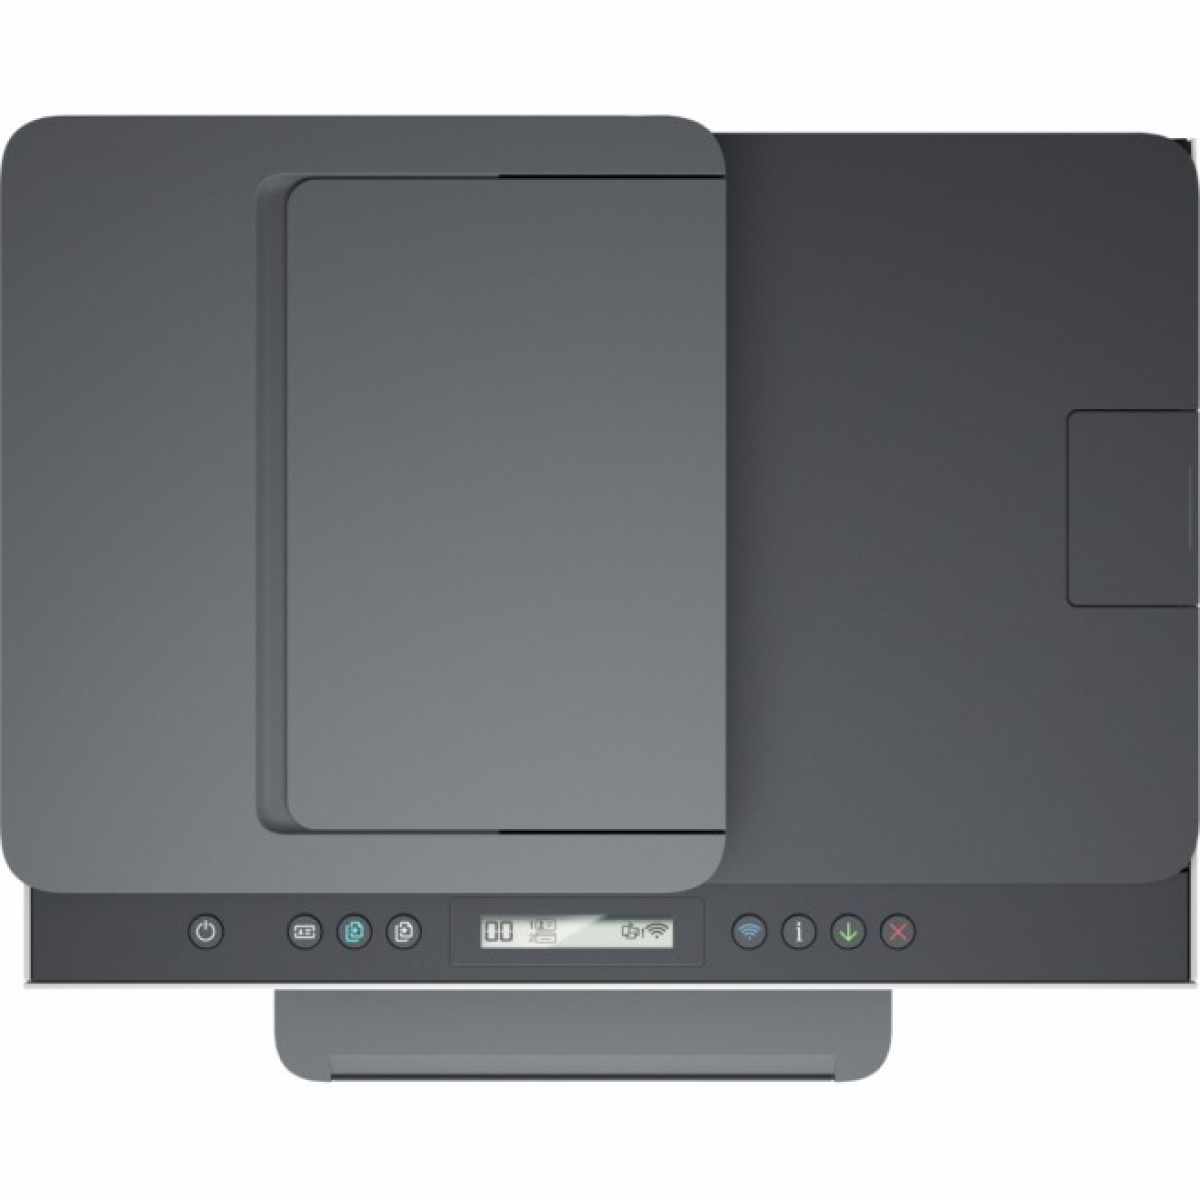 Многофункциональное устройство HP Smart Tank 750 c Wi-Fi (6UU47A) 98_98.jpg - фото 4